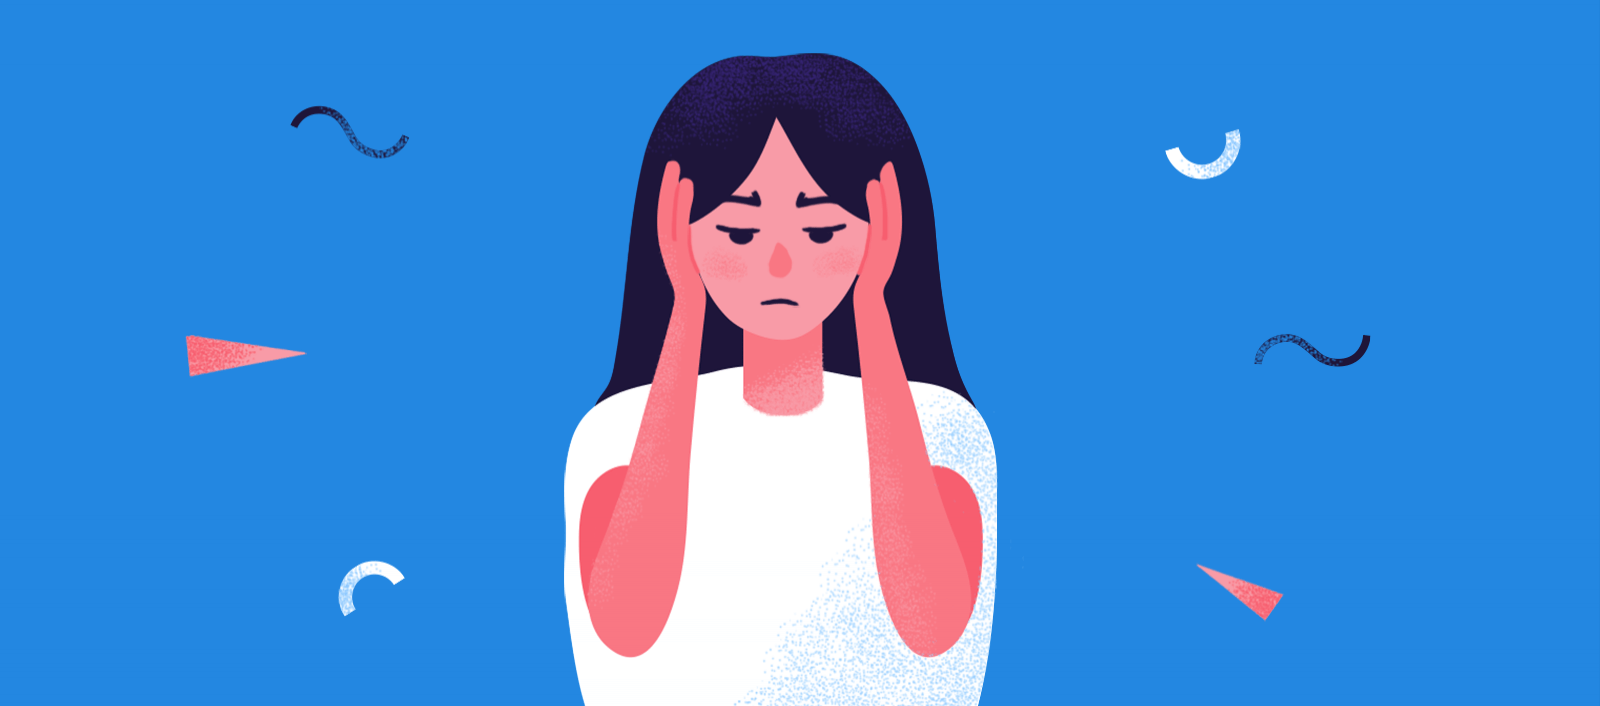 当焦虑导致下颌疼痛时该怎么办